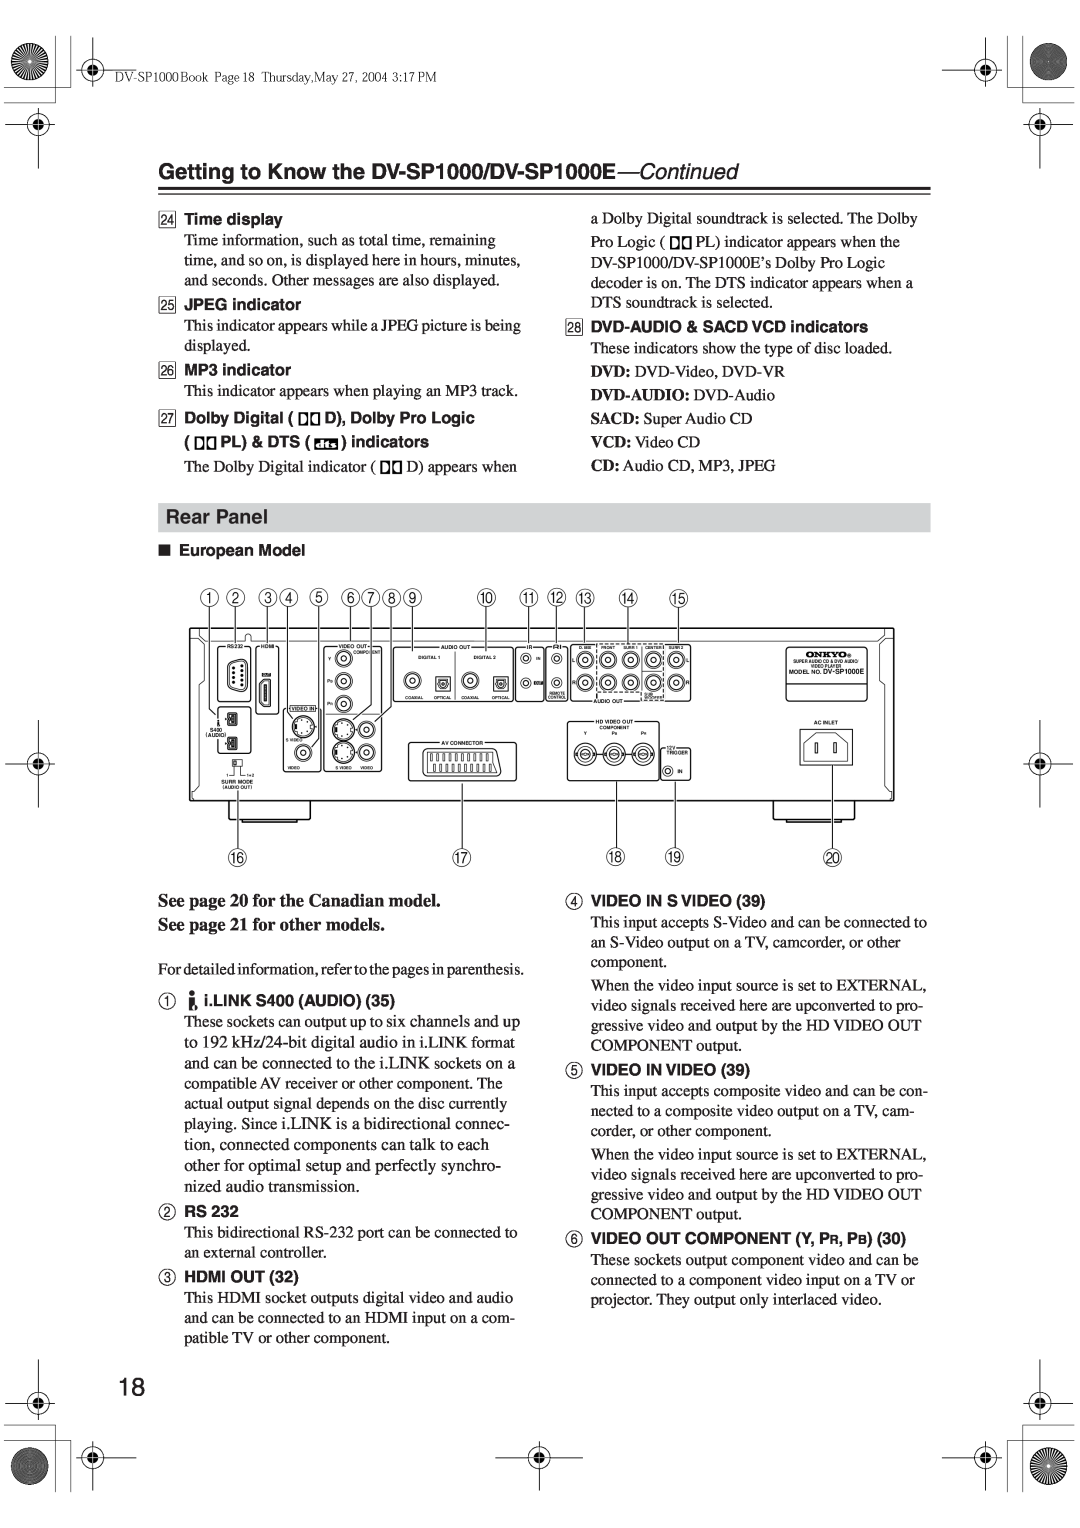 Onkyo DV-SP1000E instruction manual Rear Panel, 1 B 34 5 6789 J K L M N O, R S T 